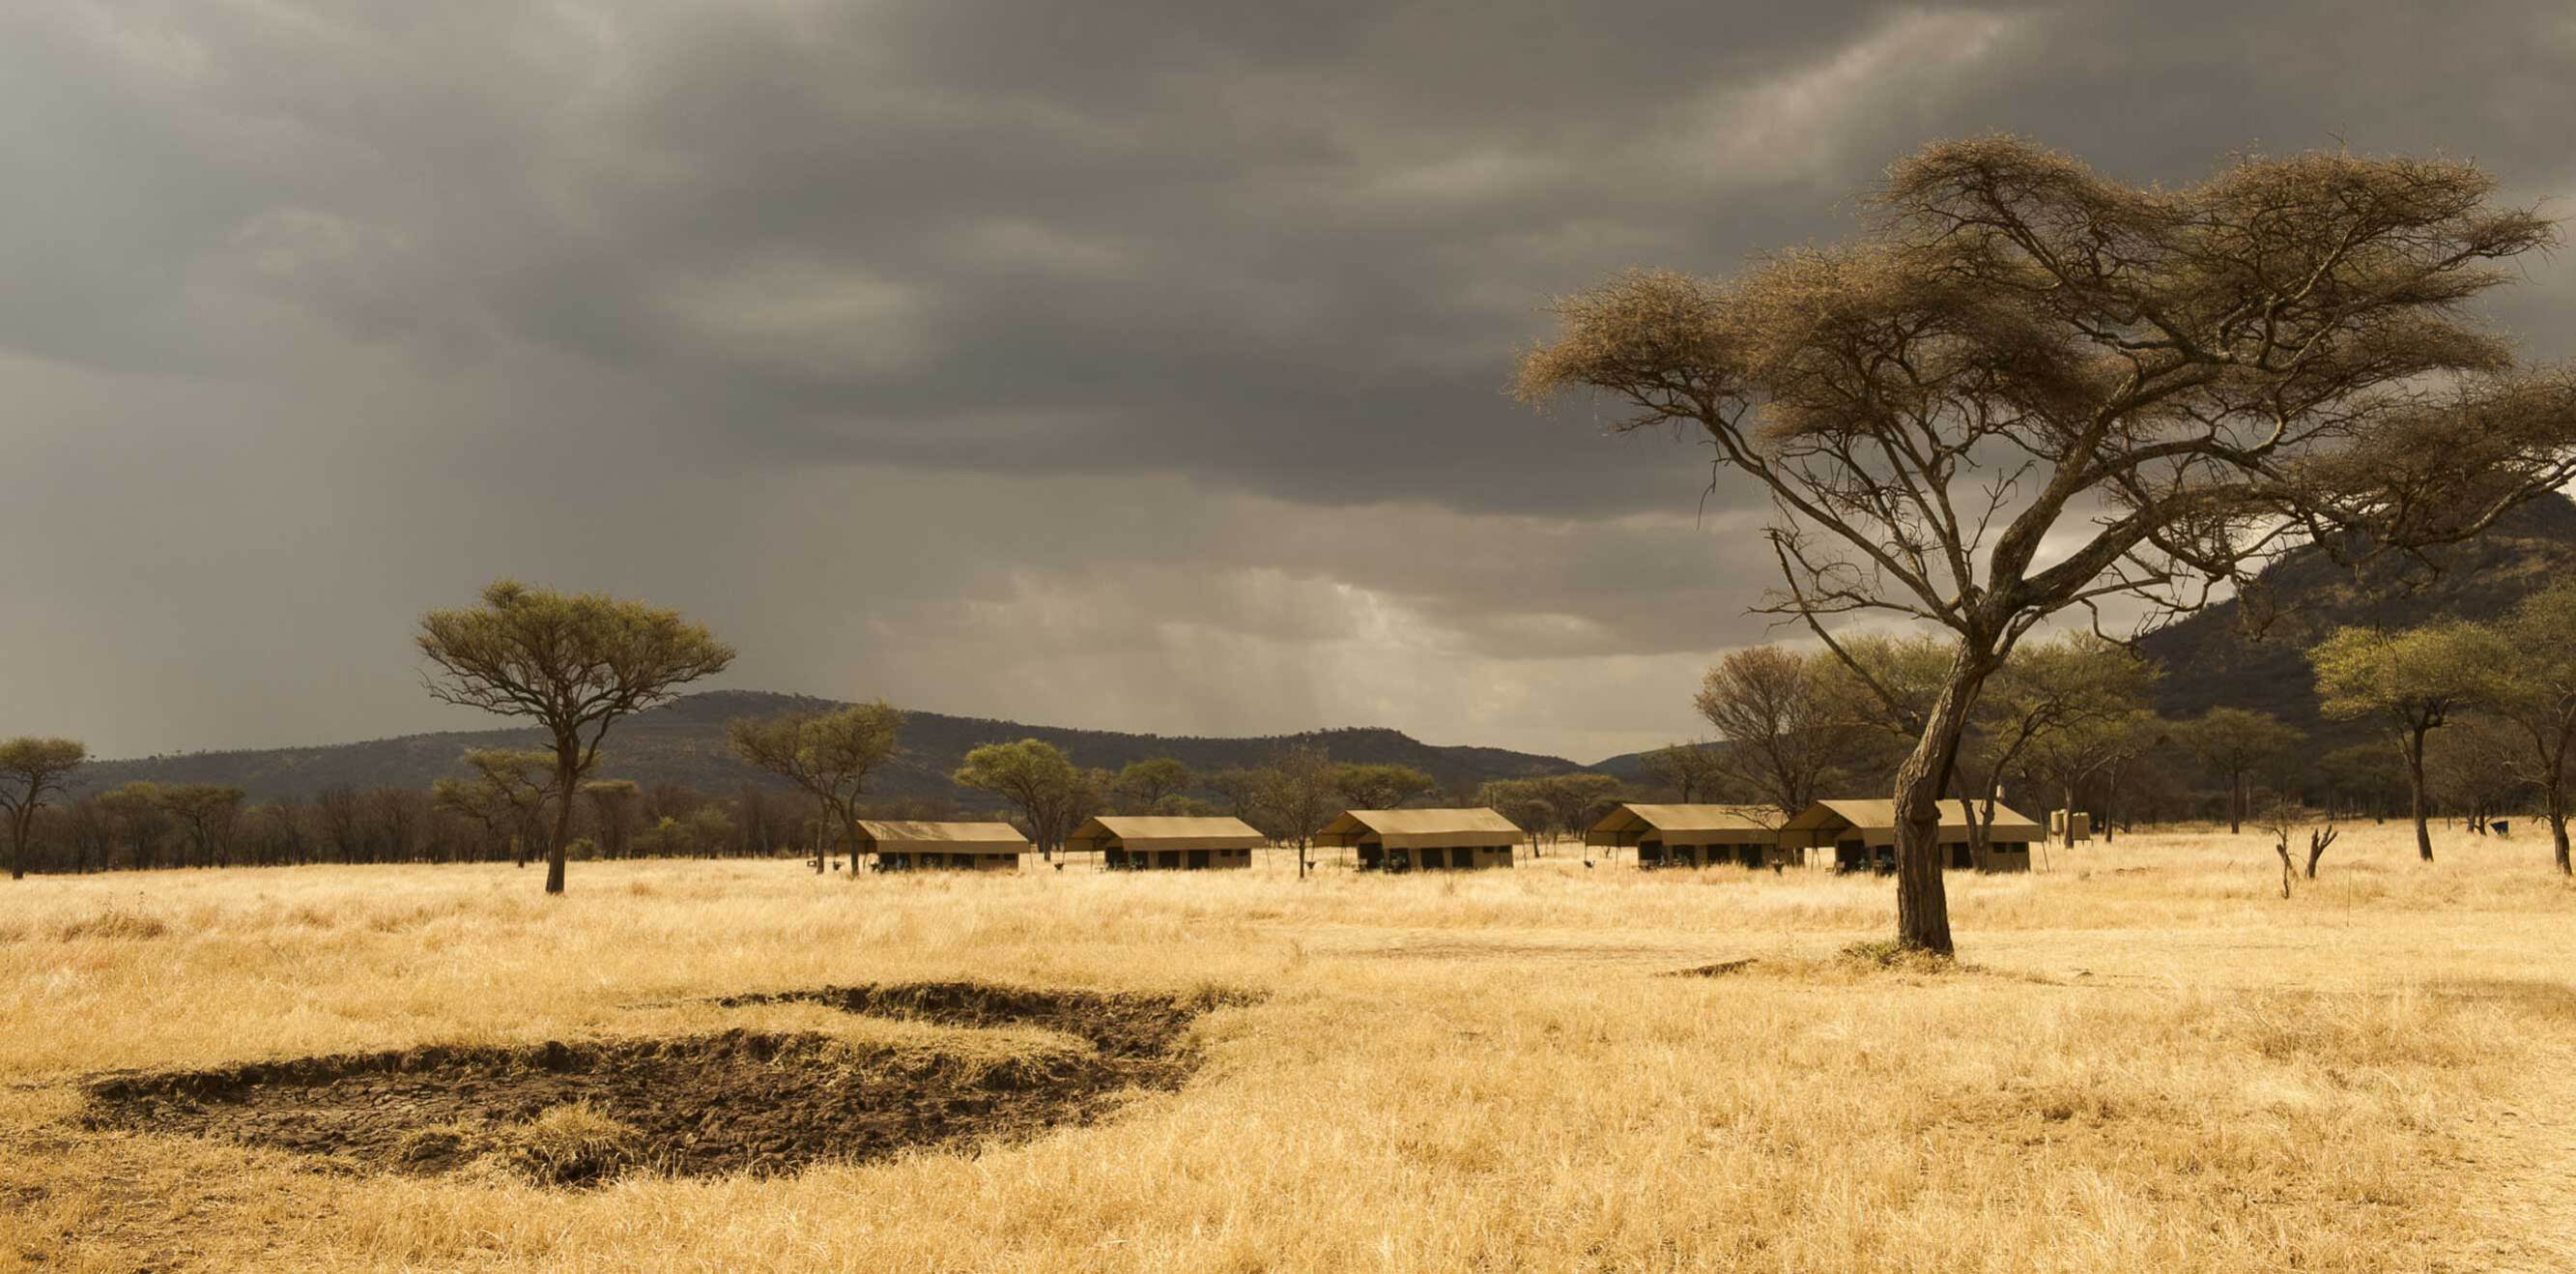 El safari ideal per als qui busquen una escapada a Àfrica allotjant-se en llocs de somni.